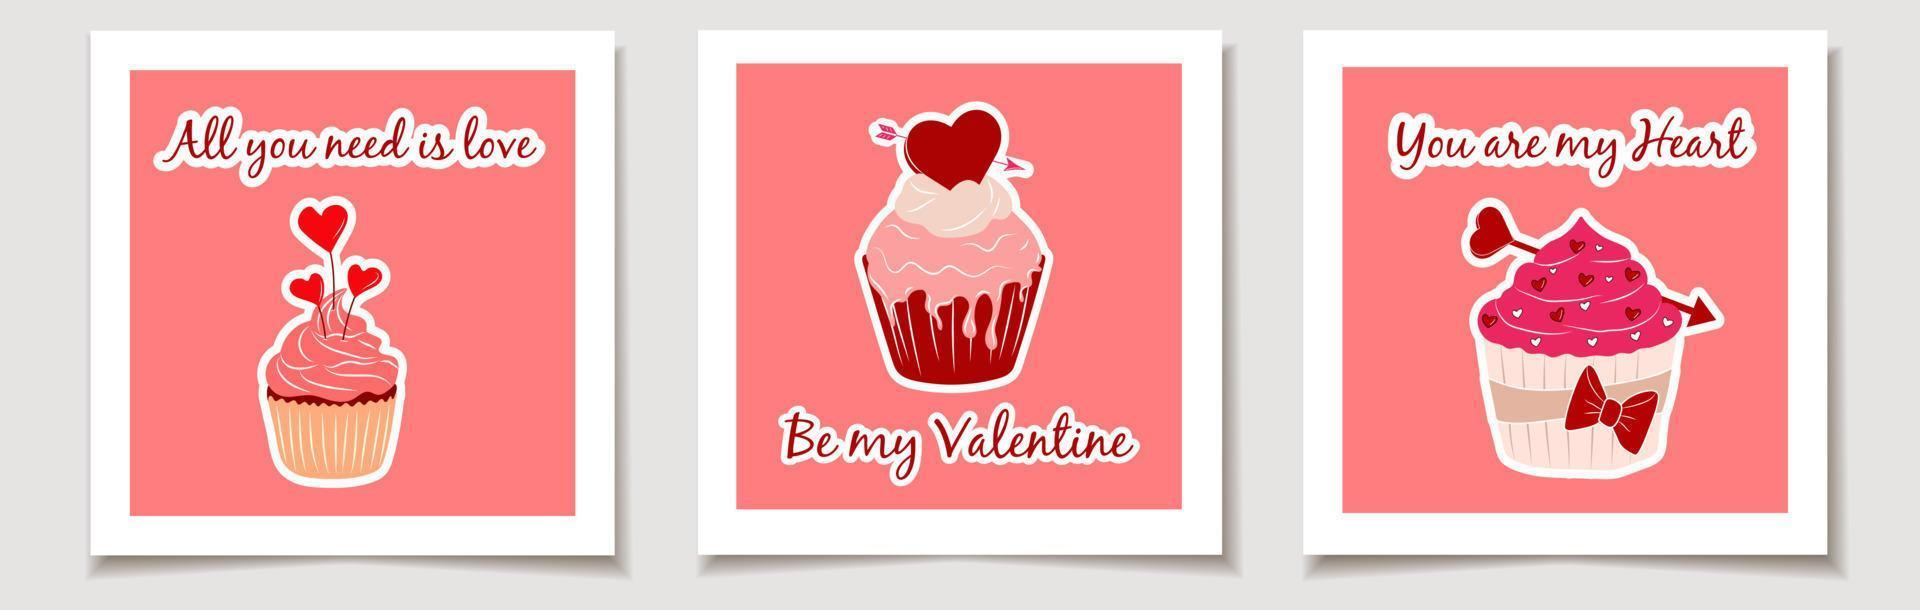 conjunto de tarjetas de san valentín con un conjunto de tres iconos de cupcakes de san valentín con estilo plano. amor, día de san valentín. vector